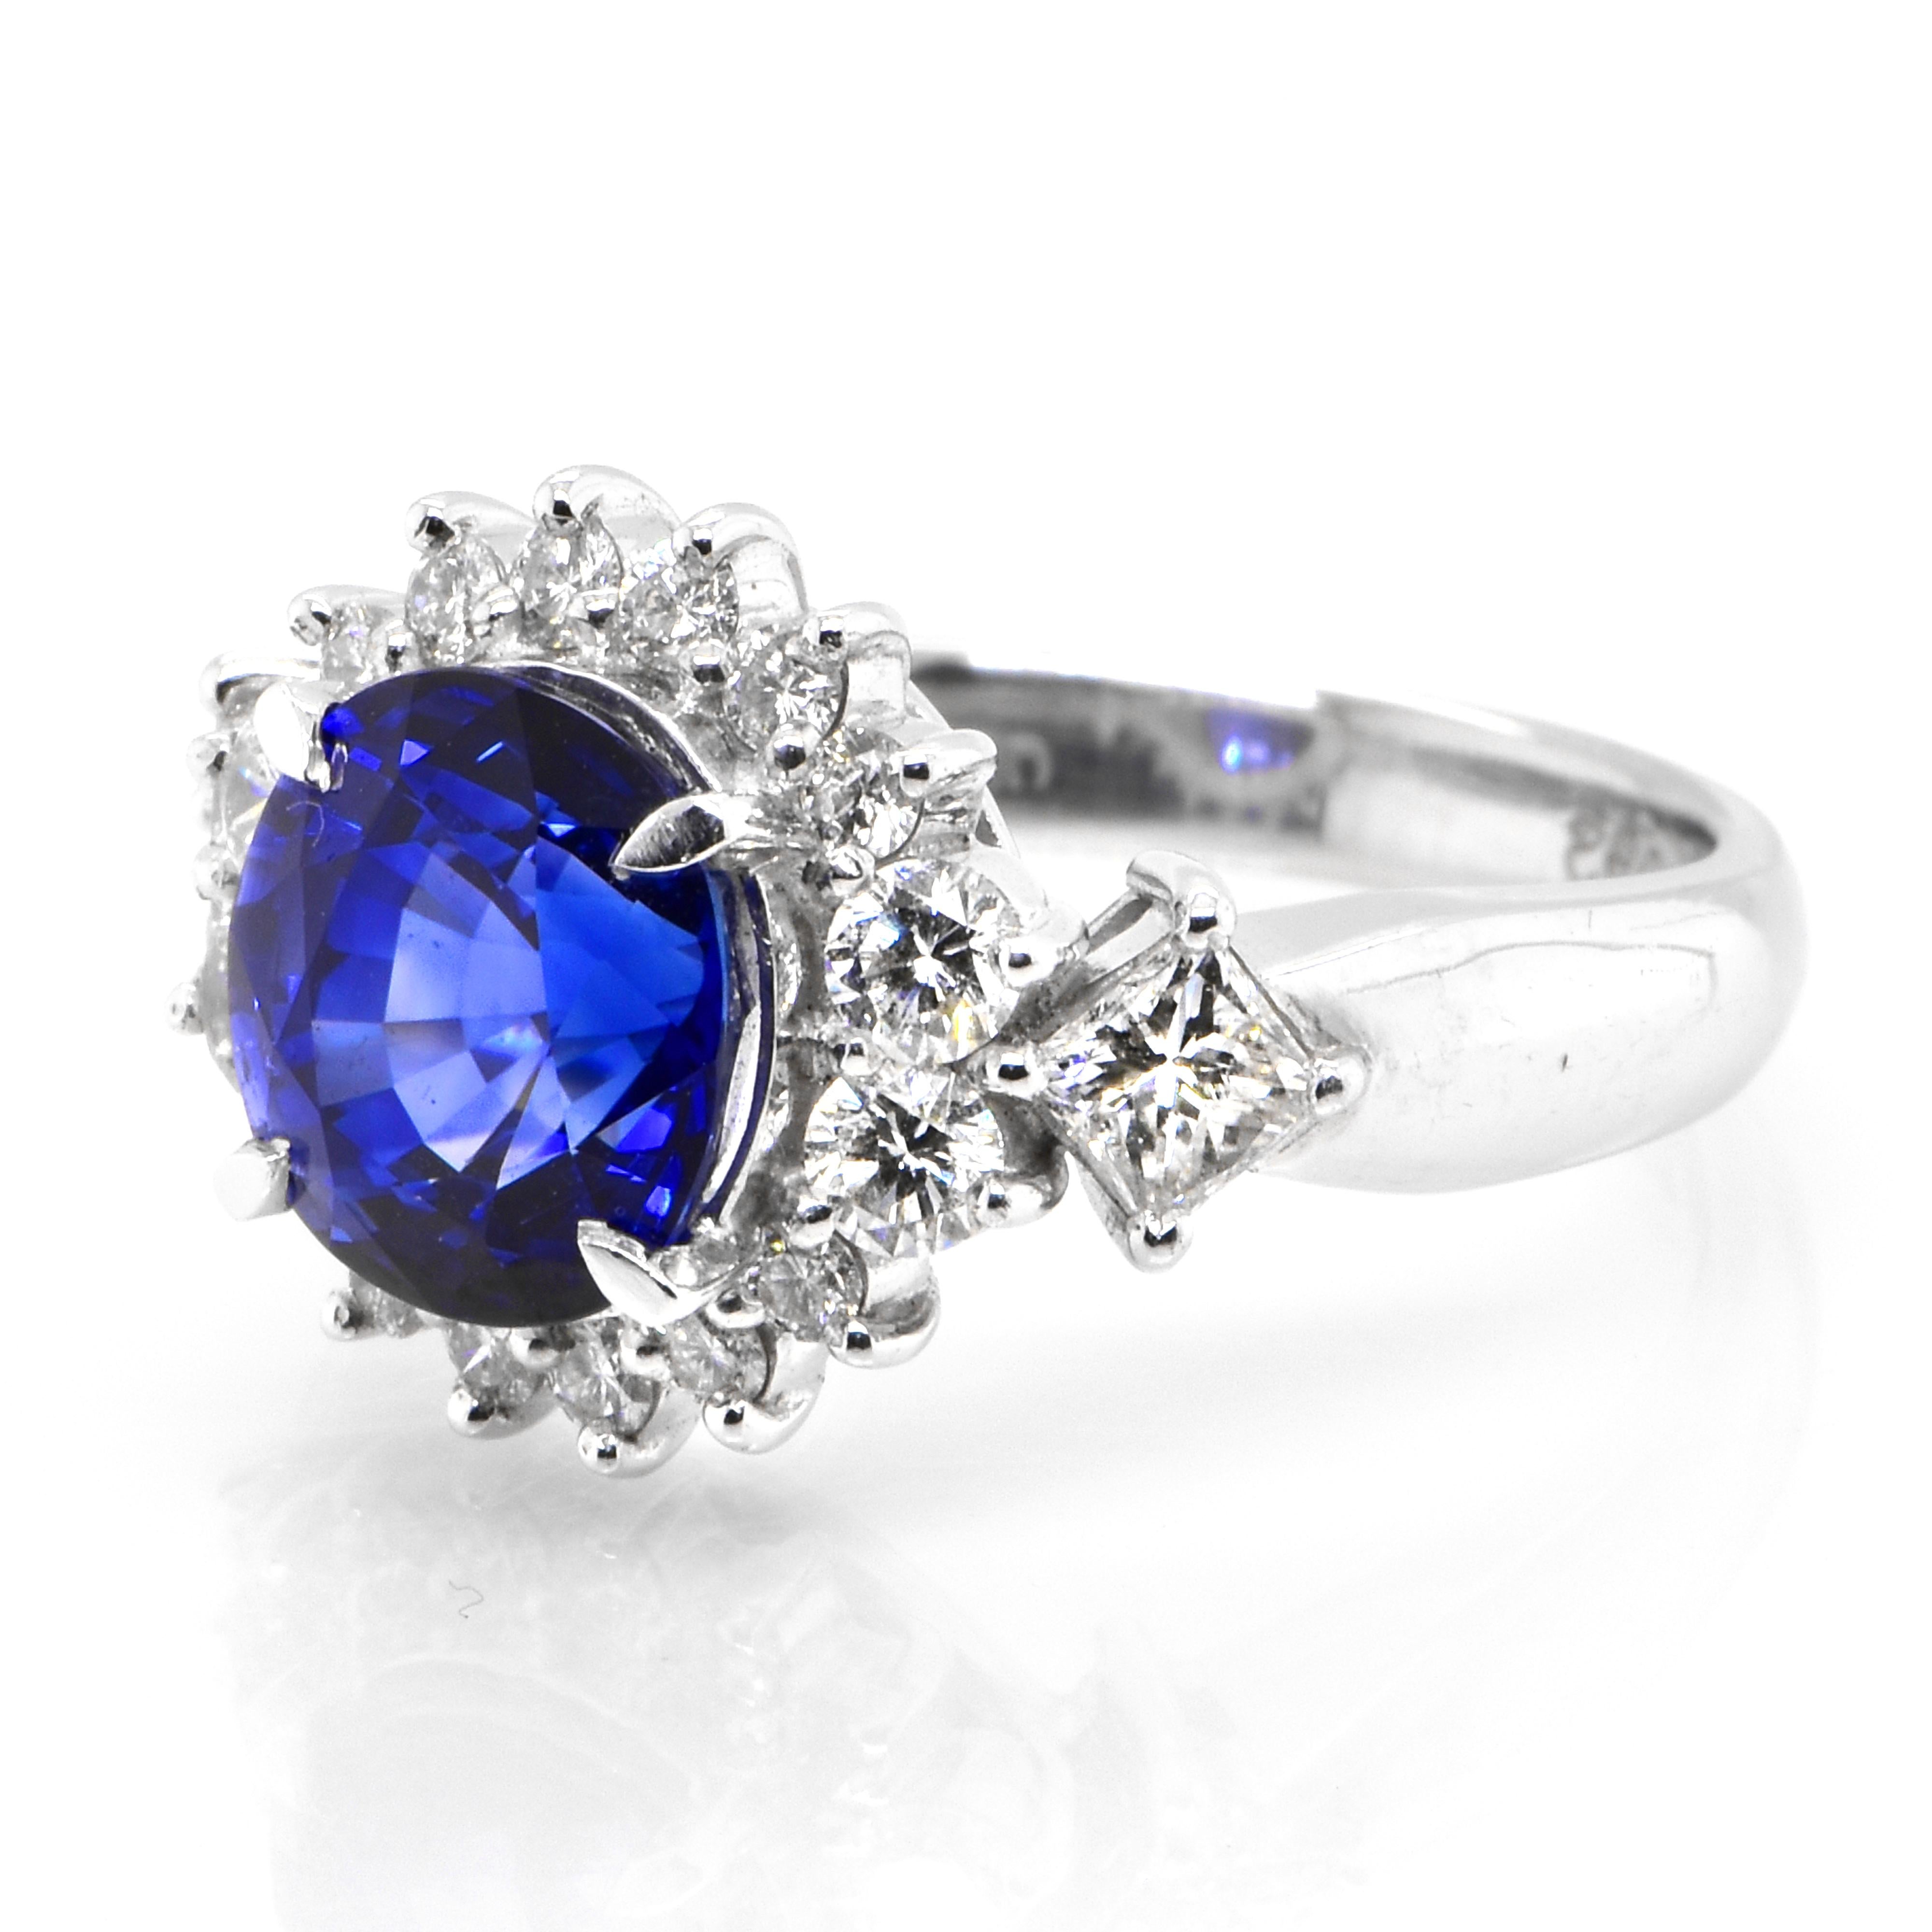 Cette magnifique bague est ornée d'un saphir bleu royal naturel de 3,21 carats et d'accents de diamants de 0,82 carats, le tout serti dans du platine. Les saphirs ont une durabilité extraordinaire - ils excellent en termes de dureté ainsi que de